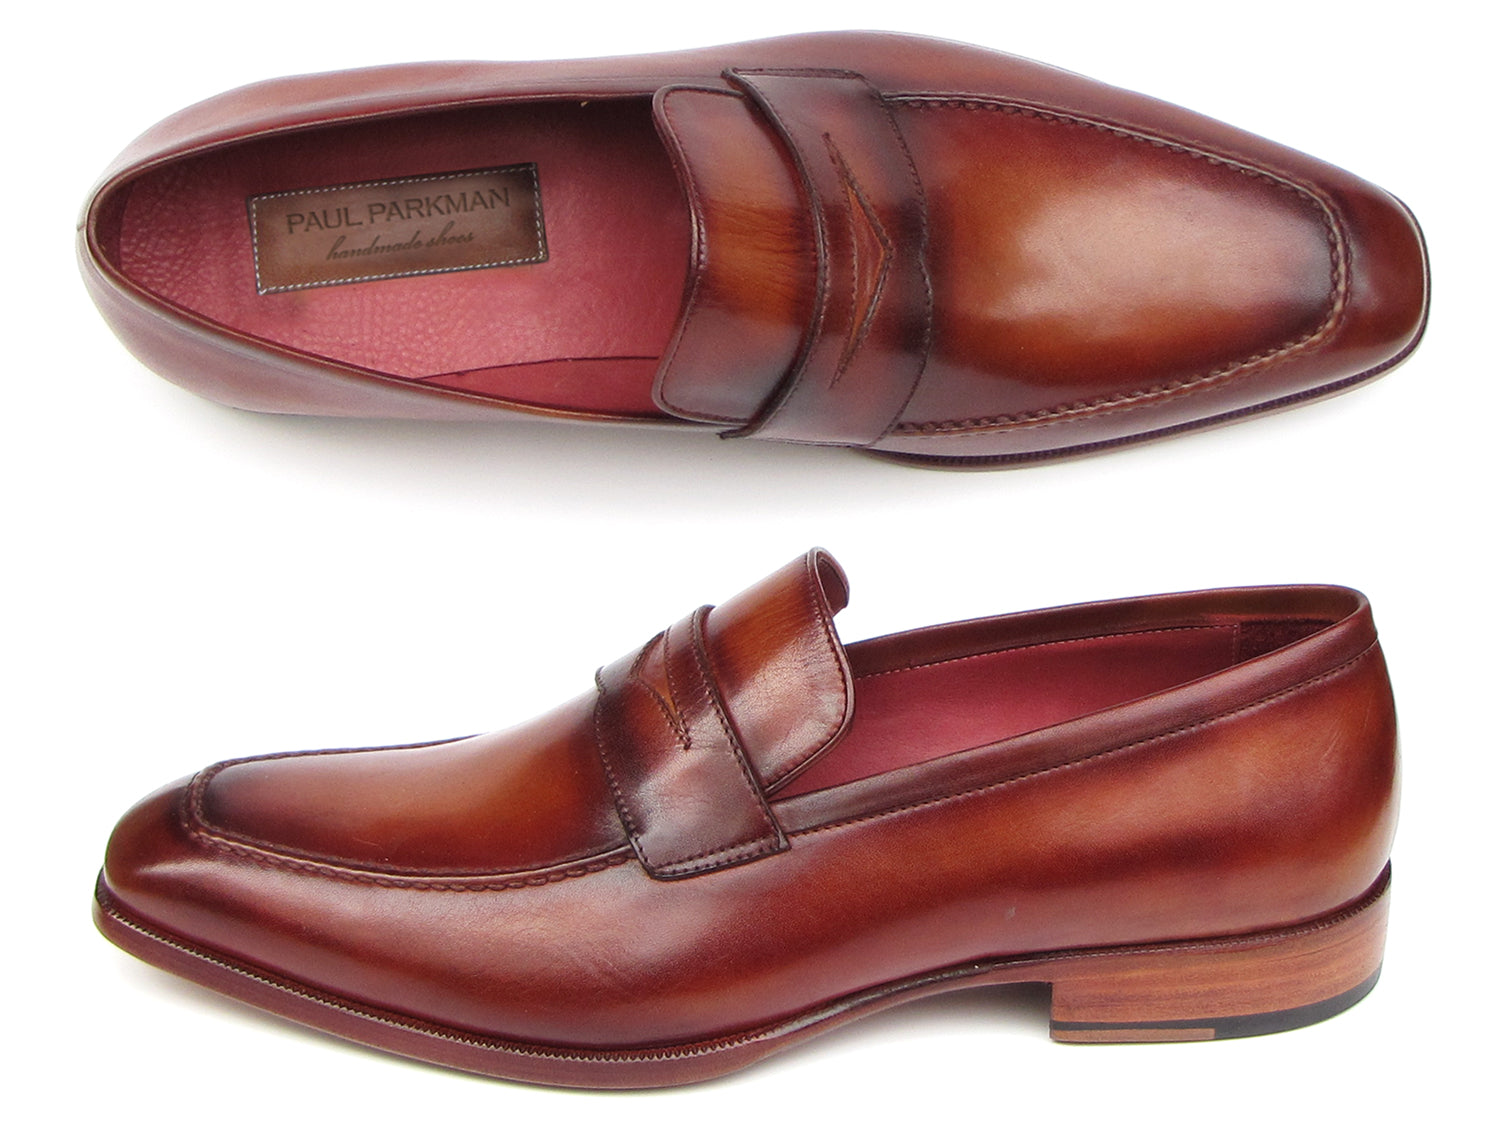 Paul Parkman Men's Penny Loafer Tobacco & Bordeaux Hand-Painted Shoes ...